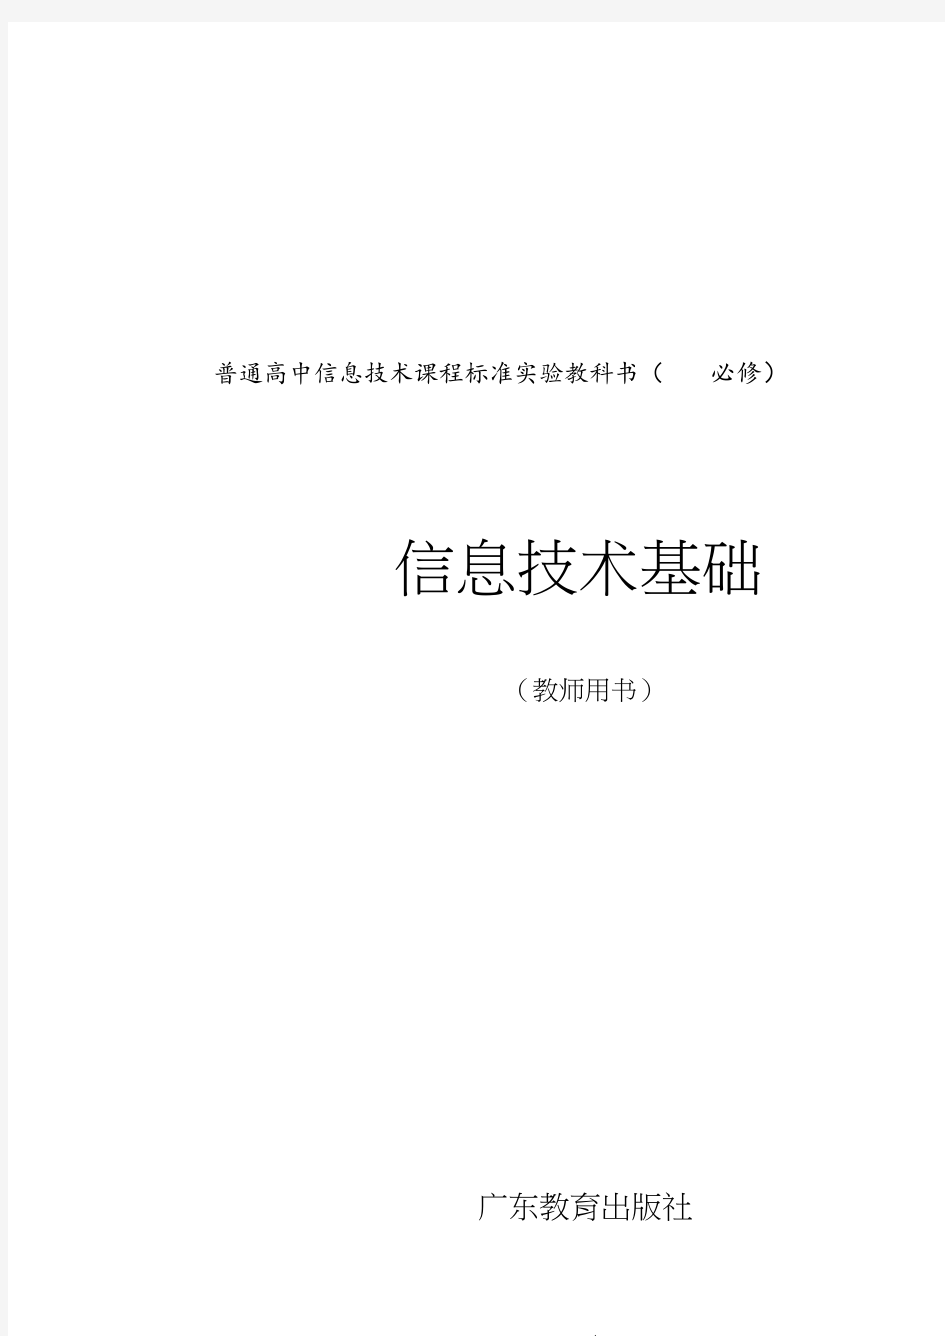 信息技术教案(必修)完整教科书.pdf